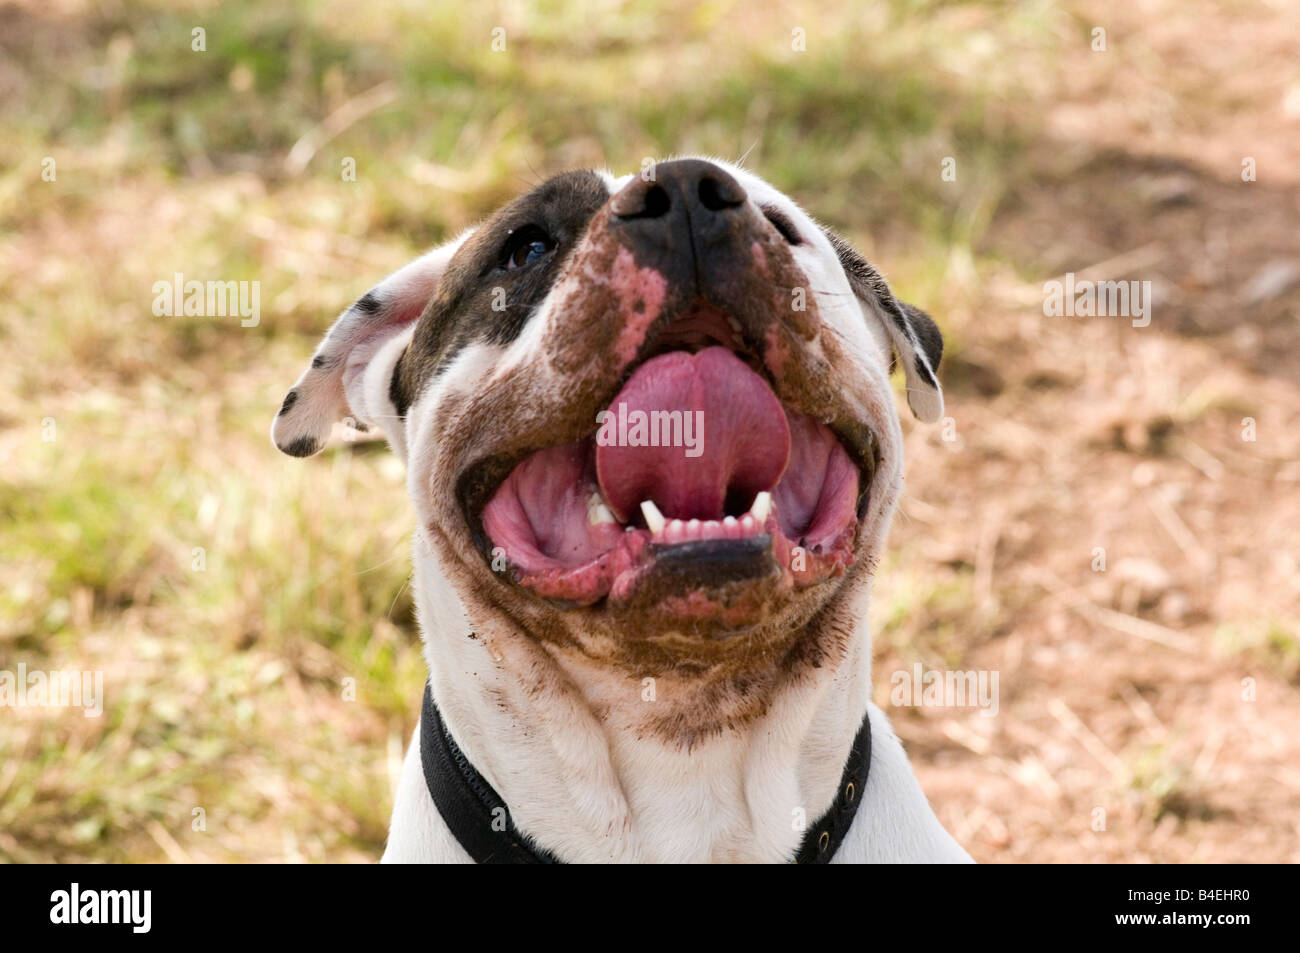 Loi sur les chiens dangereux chien pit-bull terrier Staffordshire Bull cercle vicieux combats agressifs dents morsure forte mâchoire Banque D'Images